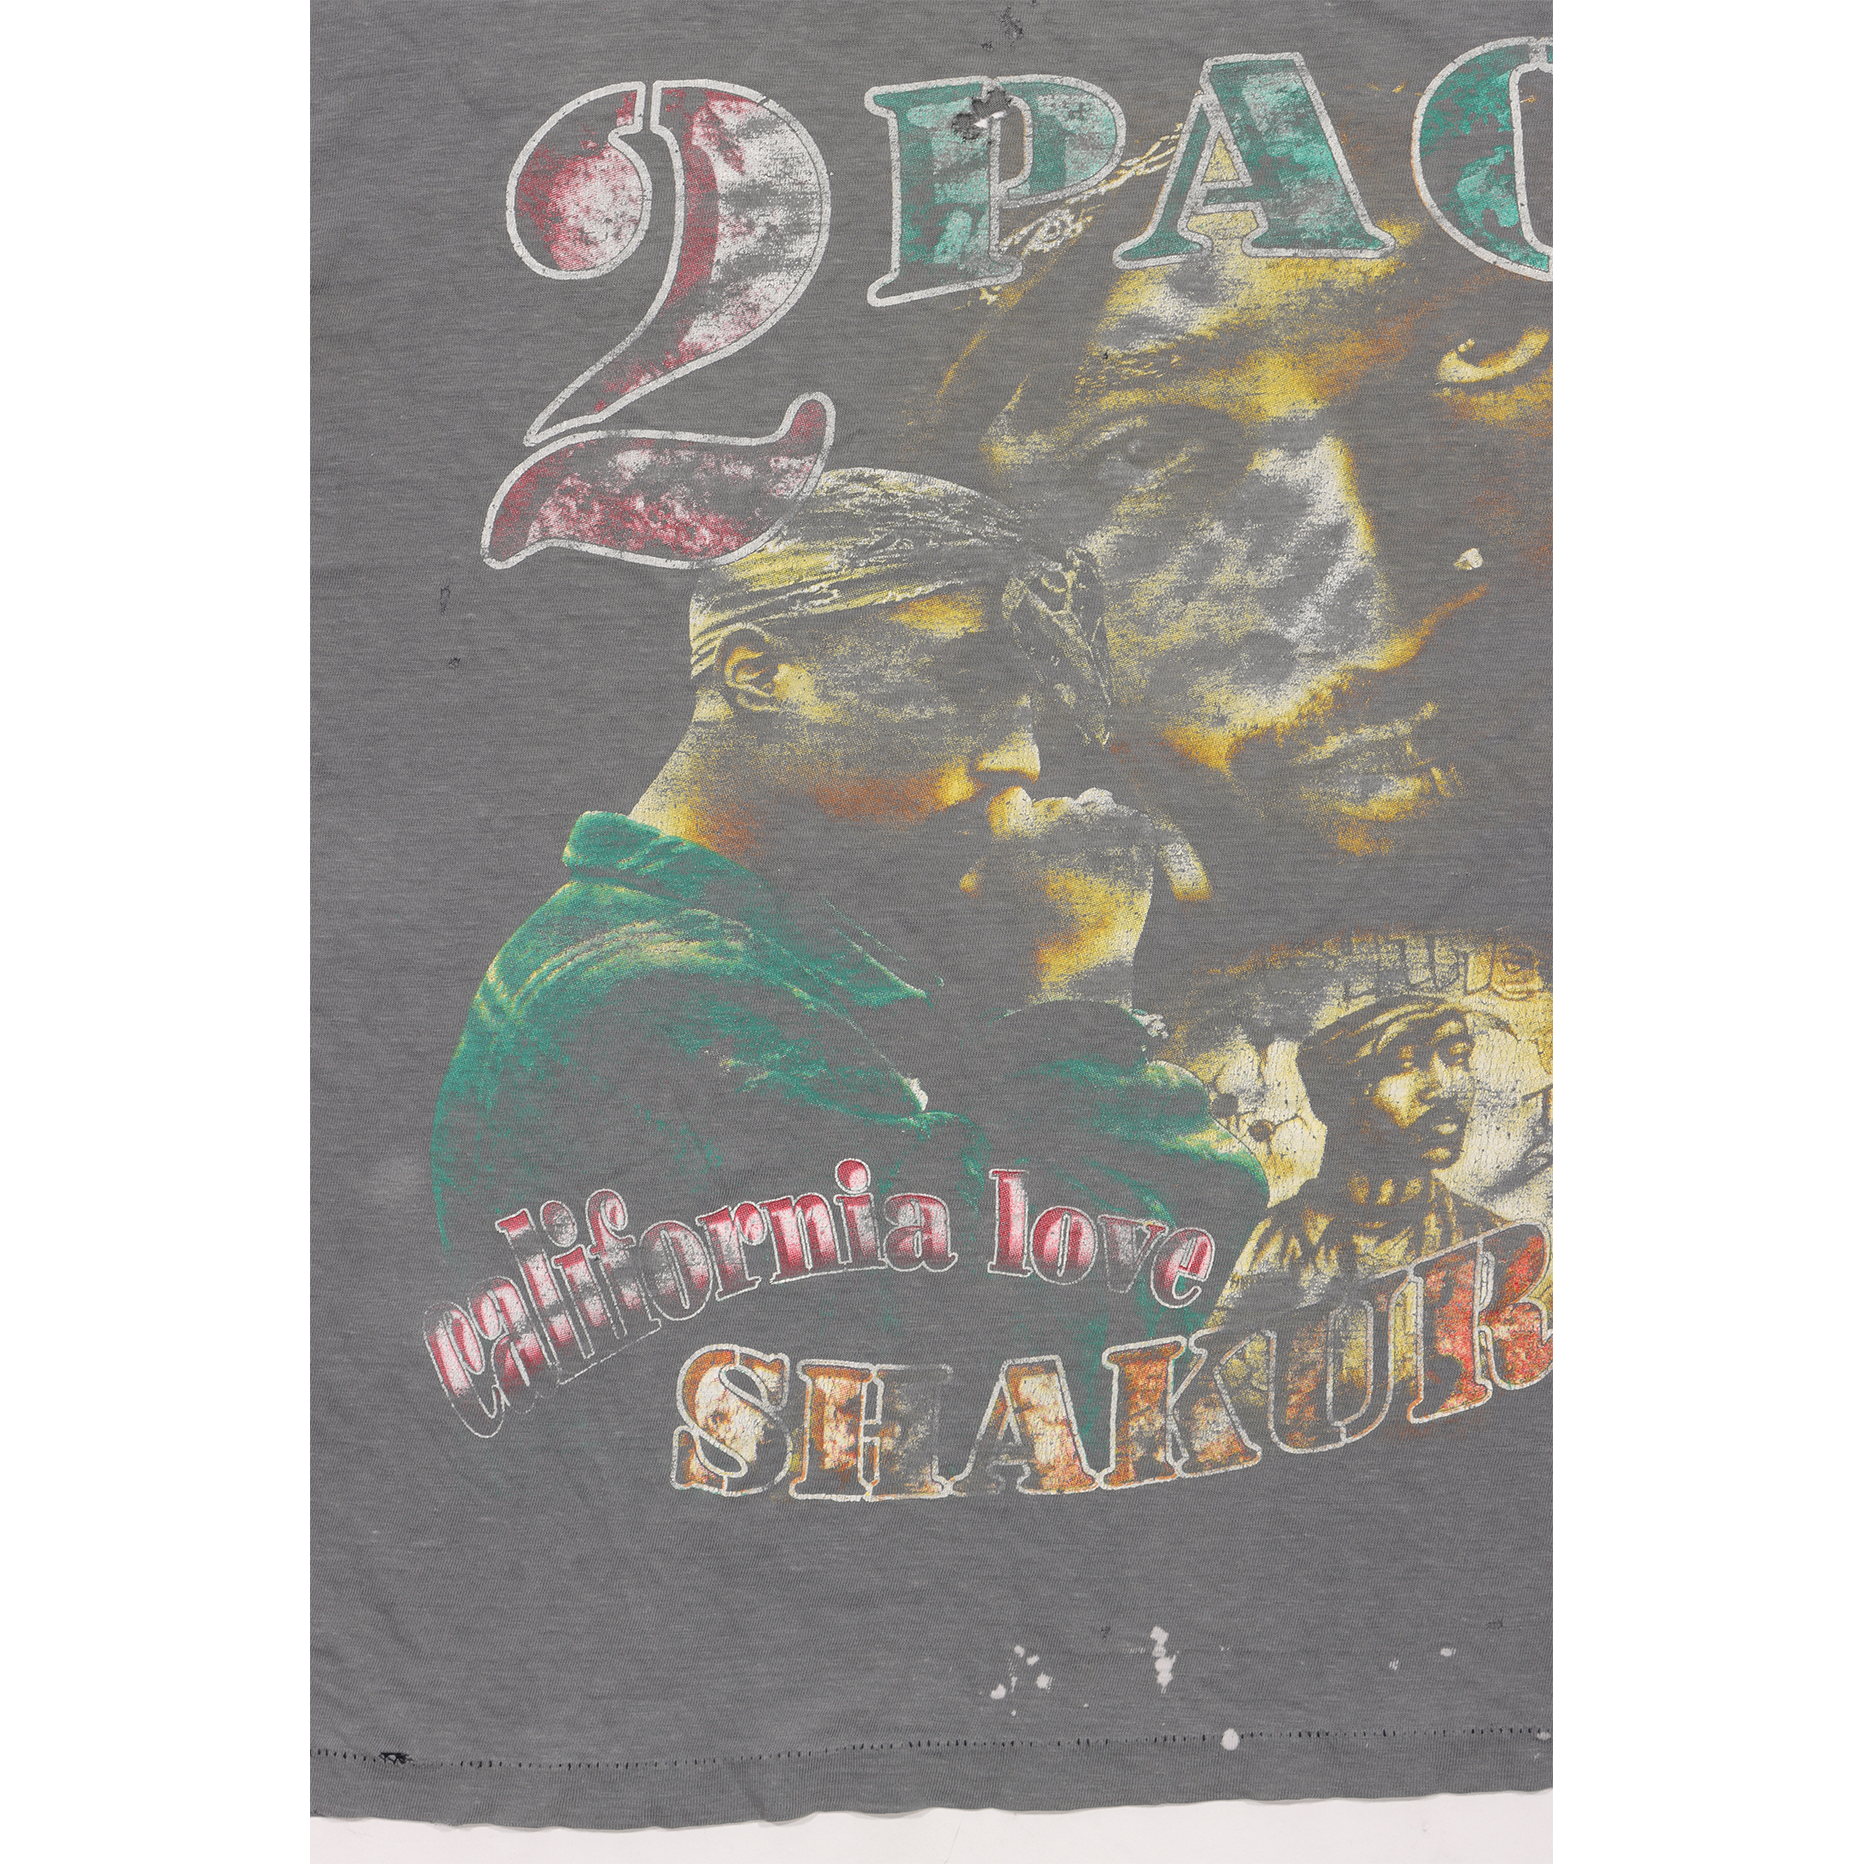 1990's Tupac Shakur T-Shirt